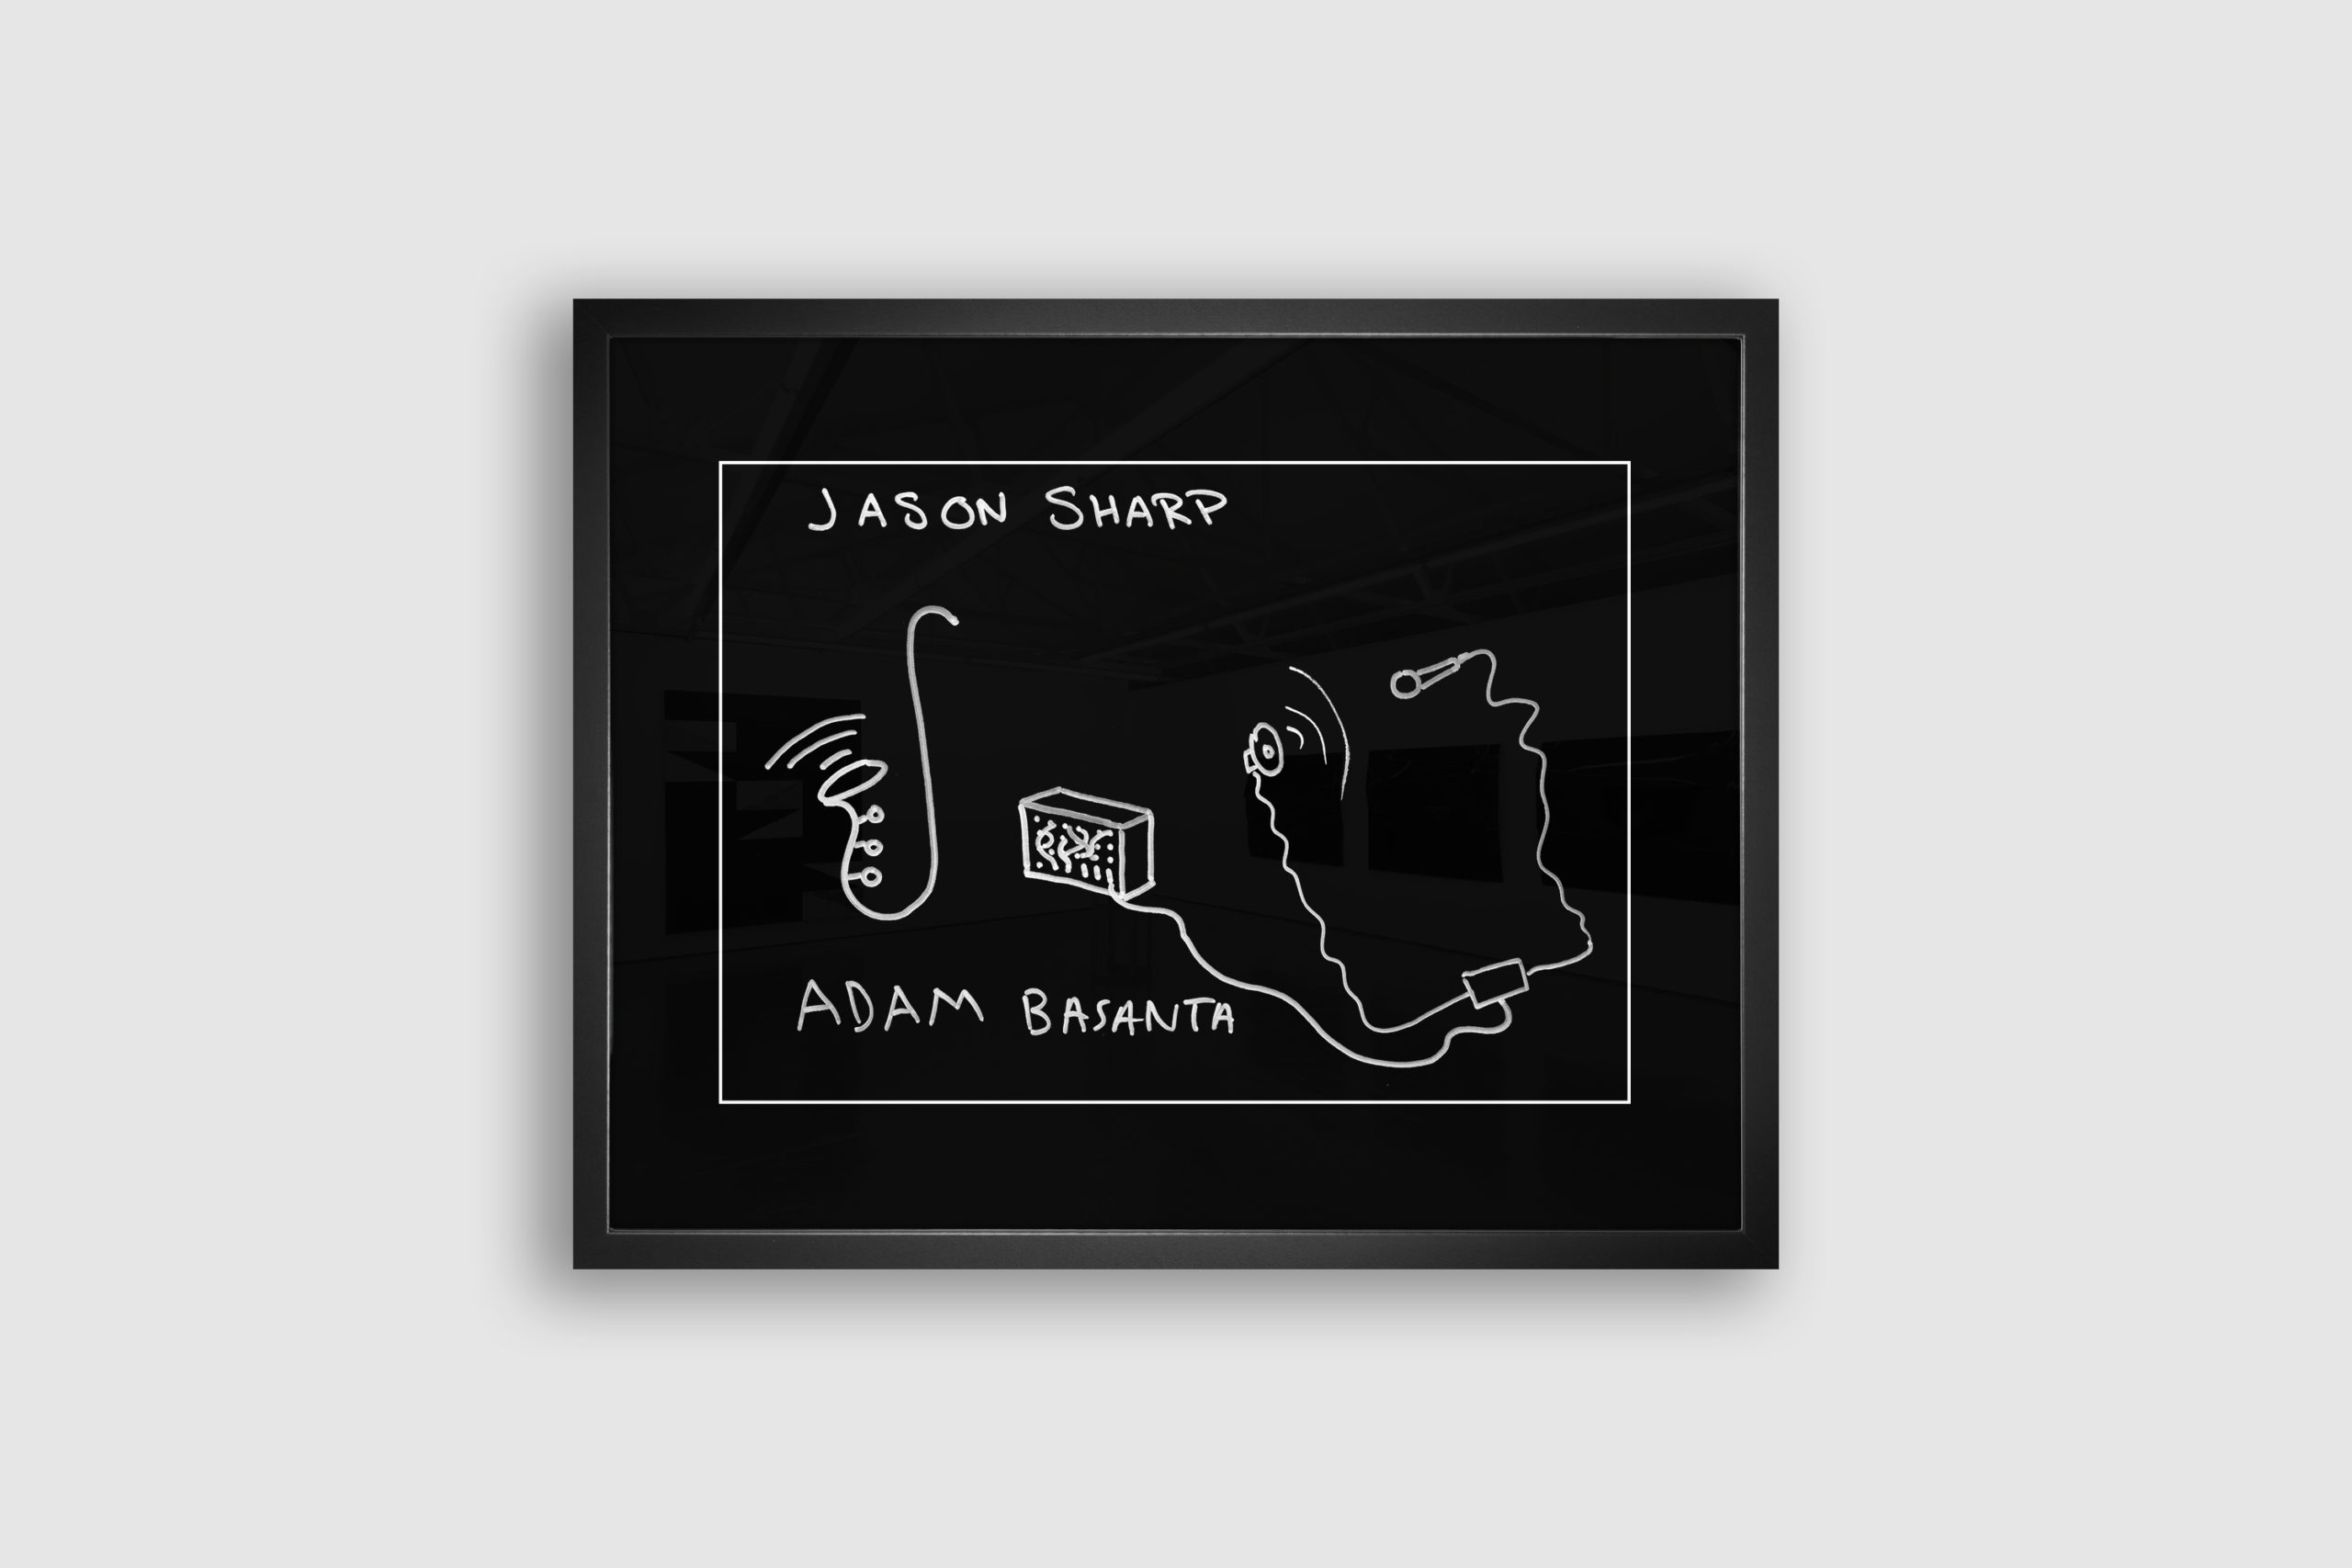 Jason Sharp & Adam Basanta